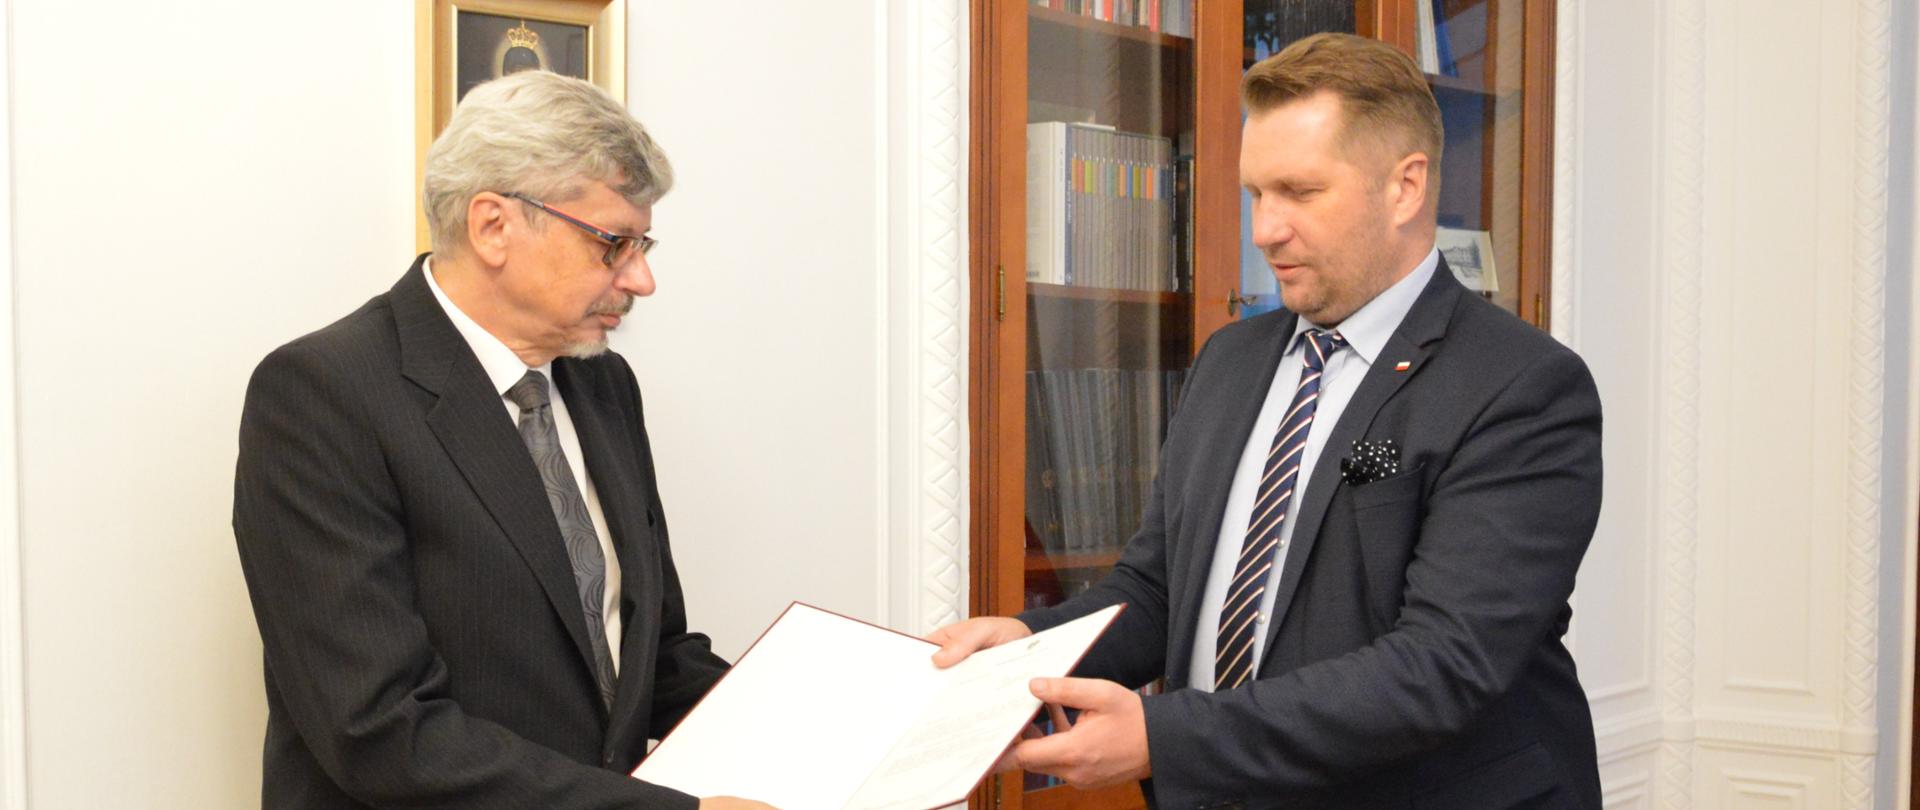 Minister Edukacji i Nauki Przemysław Czarnek przekazuje akt powołania dr. hab. Roberta Tomasza Ptaszka na stanowisko Dyrektora Instytutu Badań Edukacyjnych.